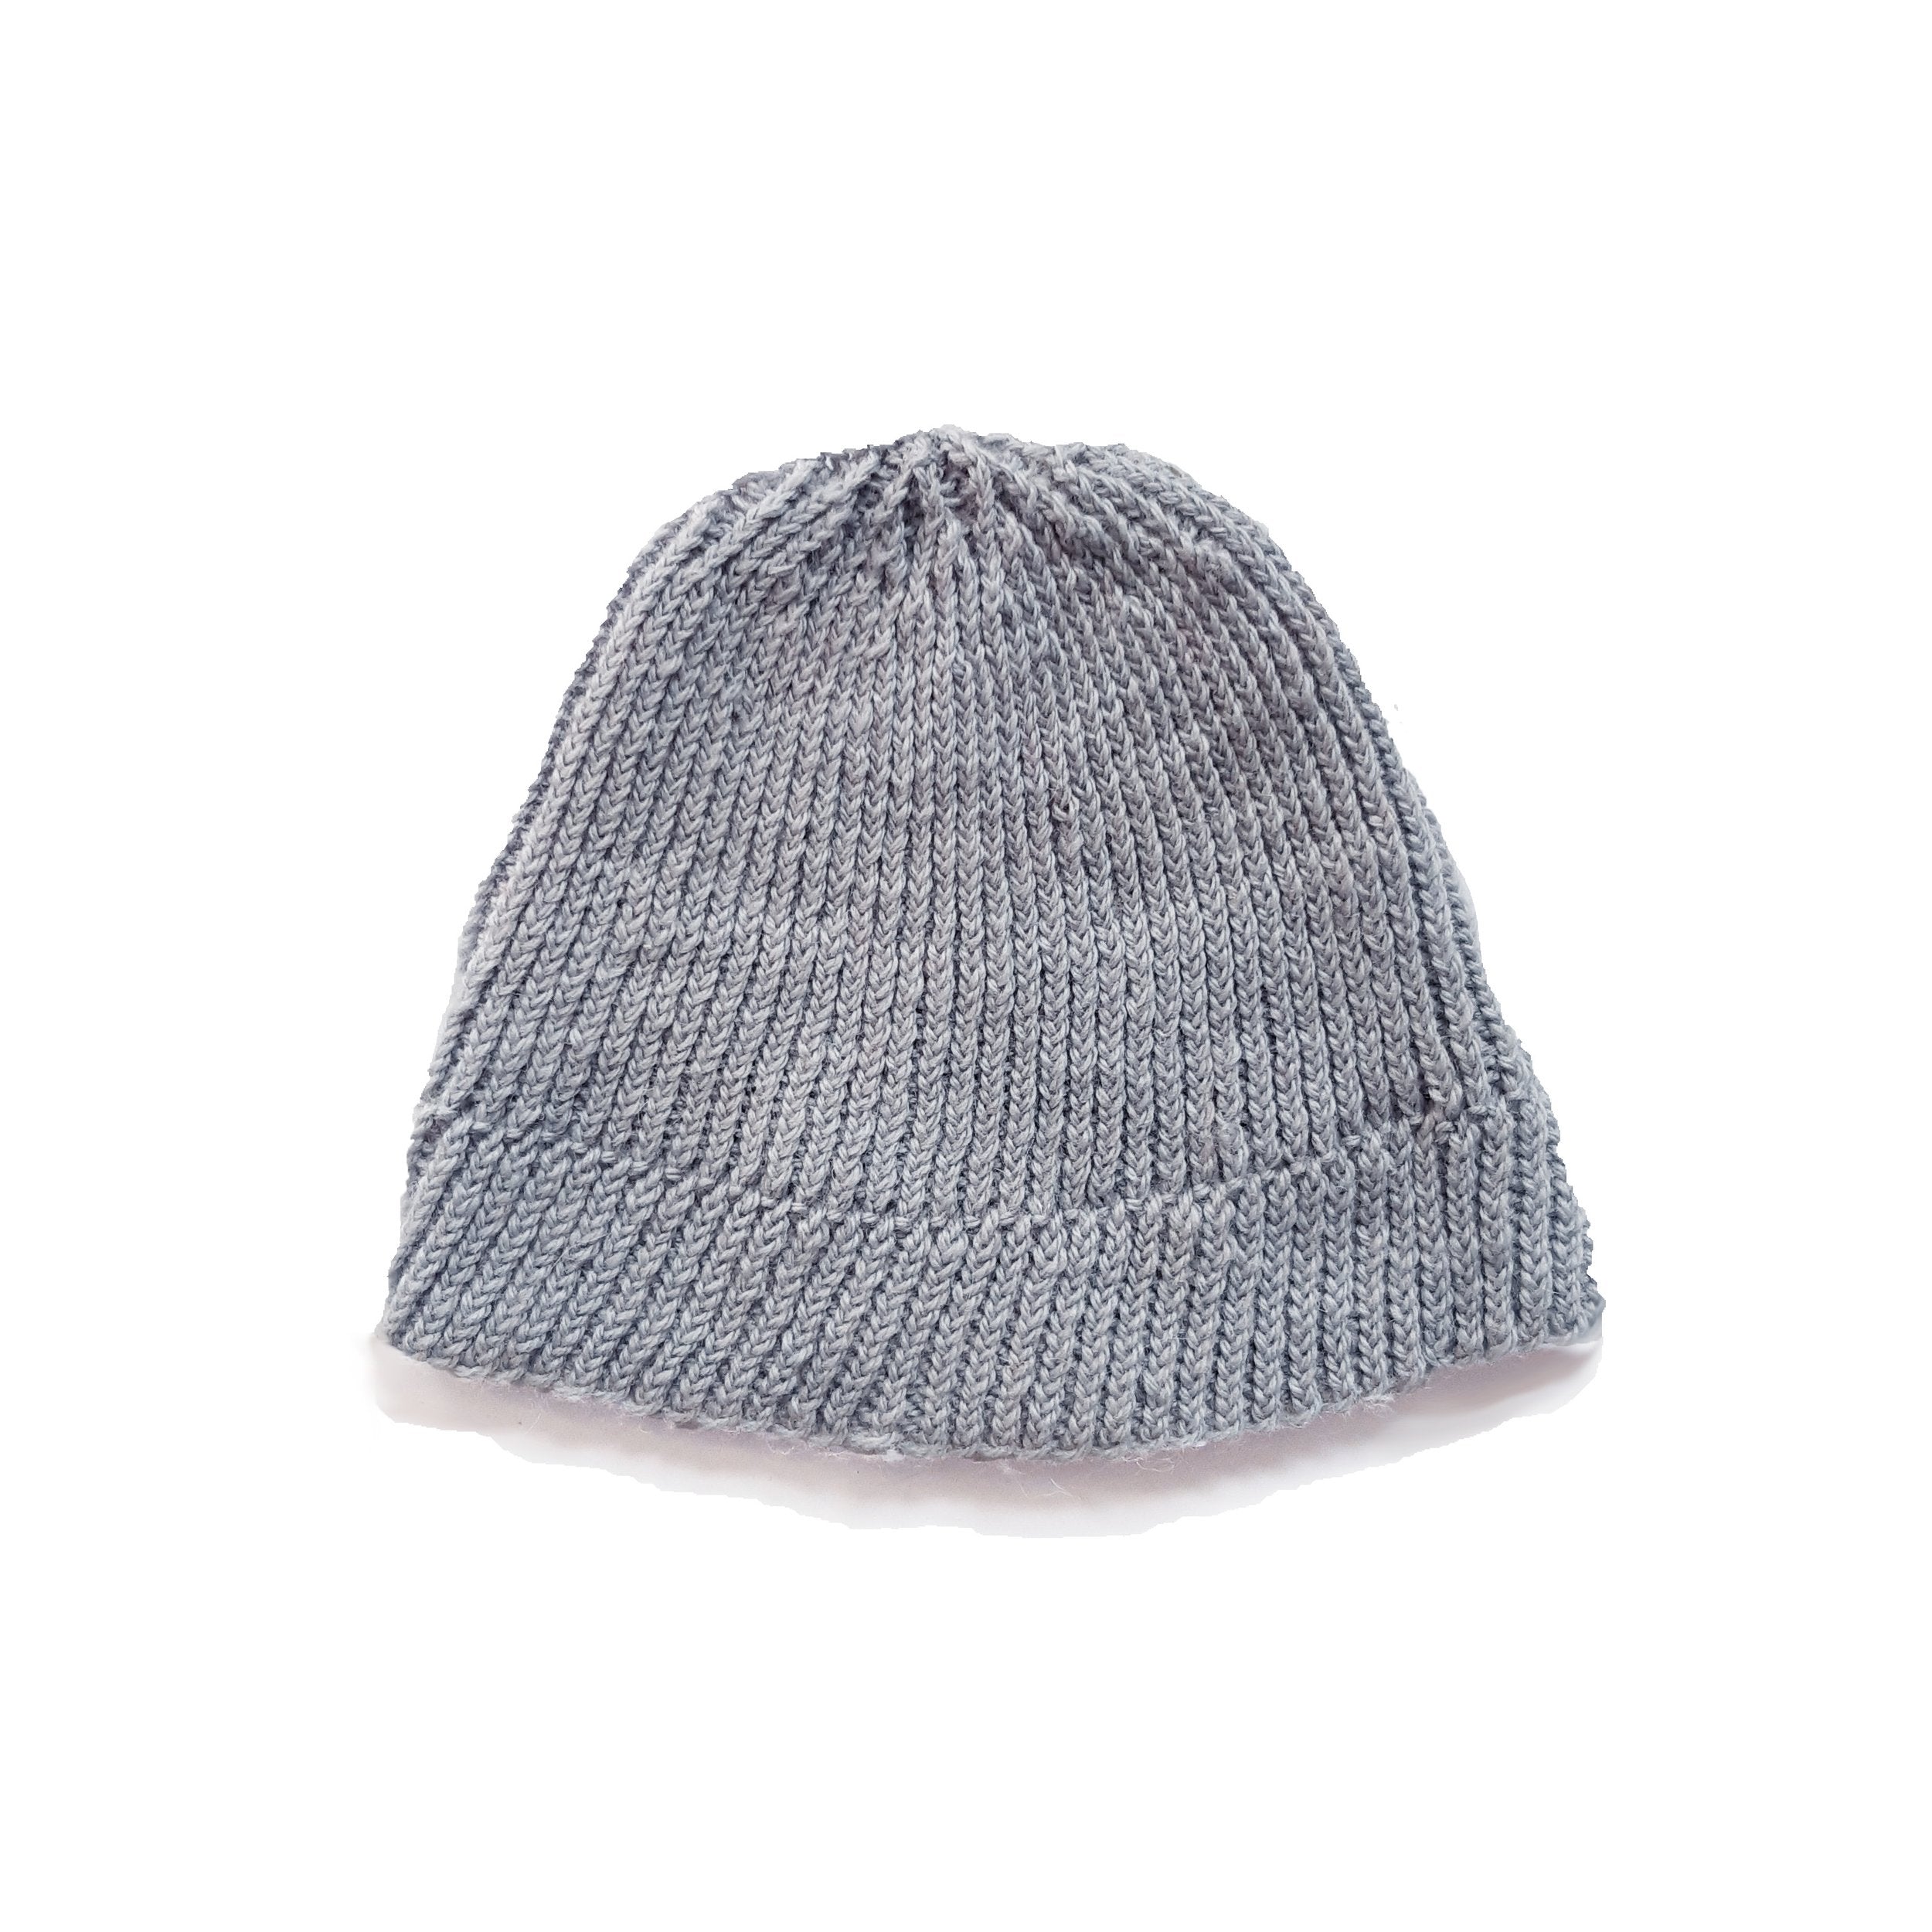 Powder Blue - British Wool - Hand Knitted Hat